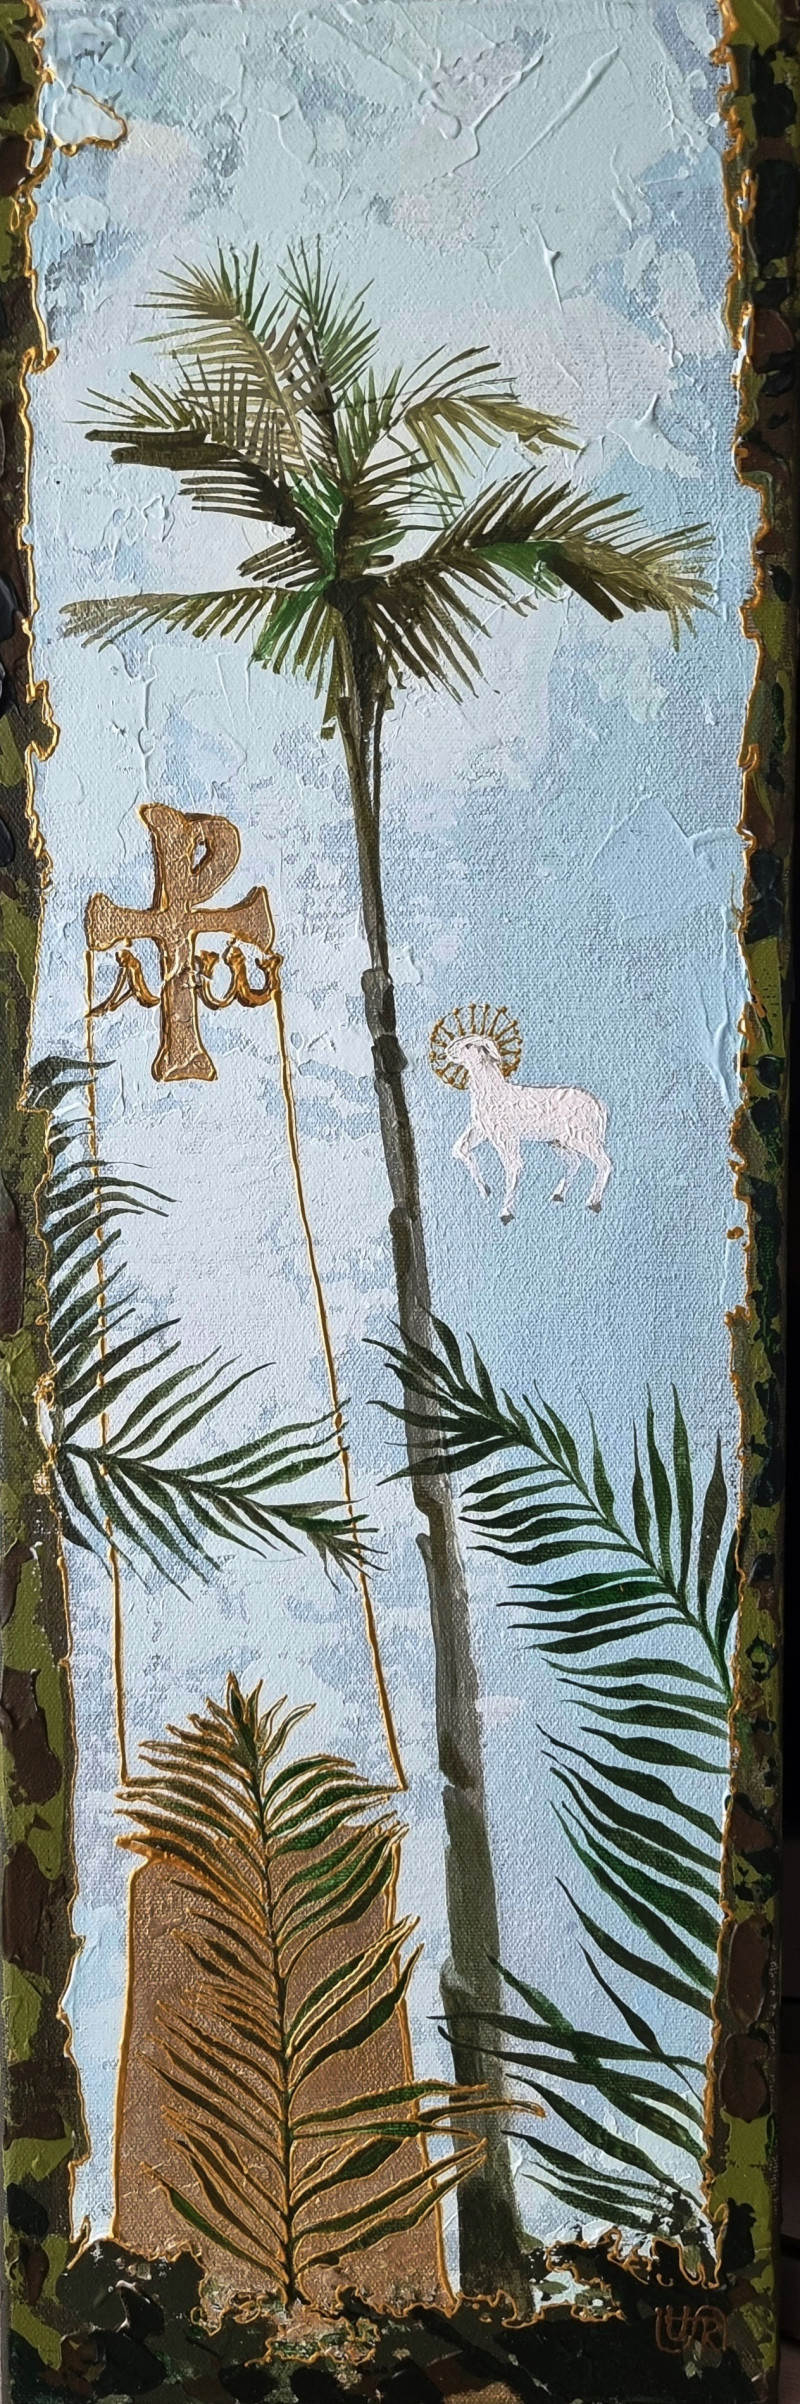 Rasa Tamošiūnienė tapytas paveikslas Teisieji žaliuoja lyg palmės, Sakralinis , paveikslai internetu